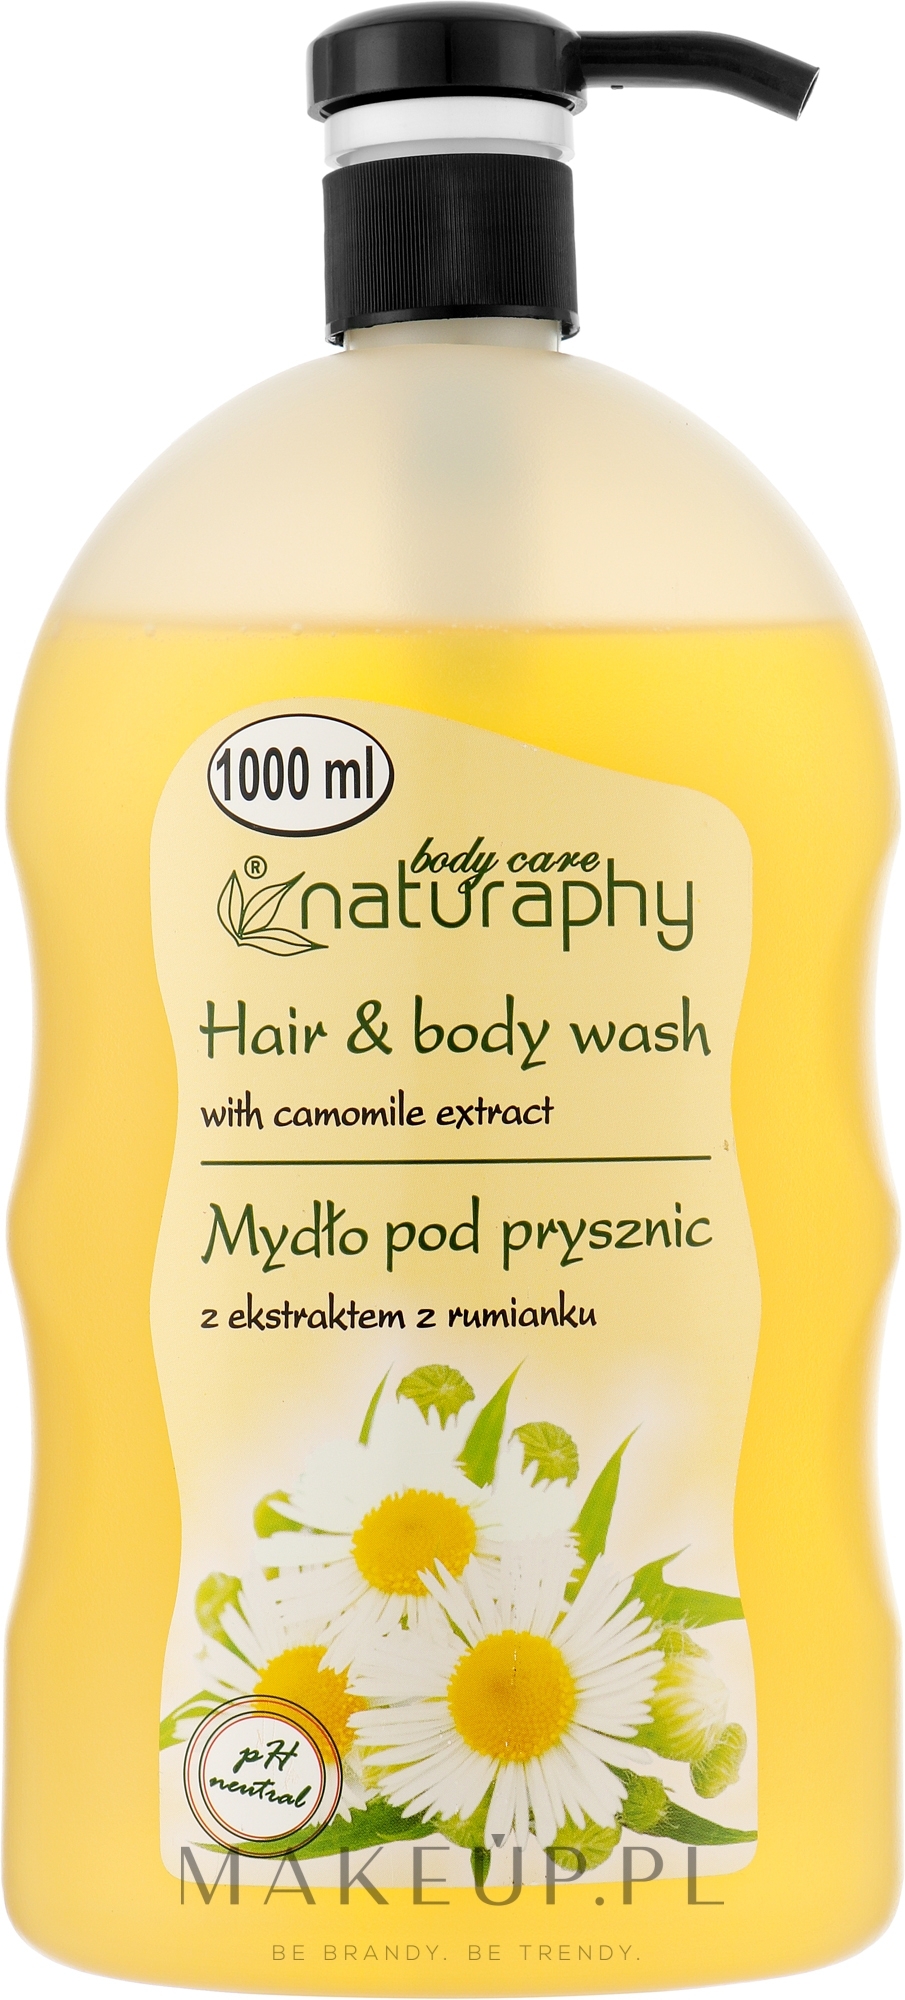 Mydło pod prysznic do włosów i ciała z ekstraktem z rumianku - Naturaphy — Zdjęcie 1000 ml